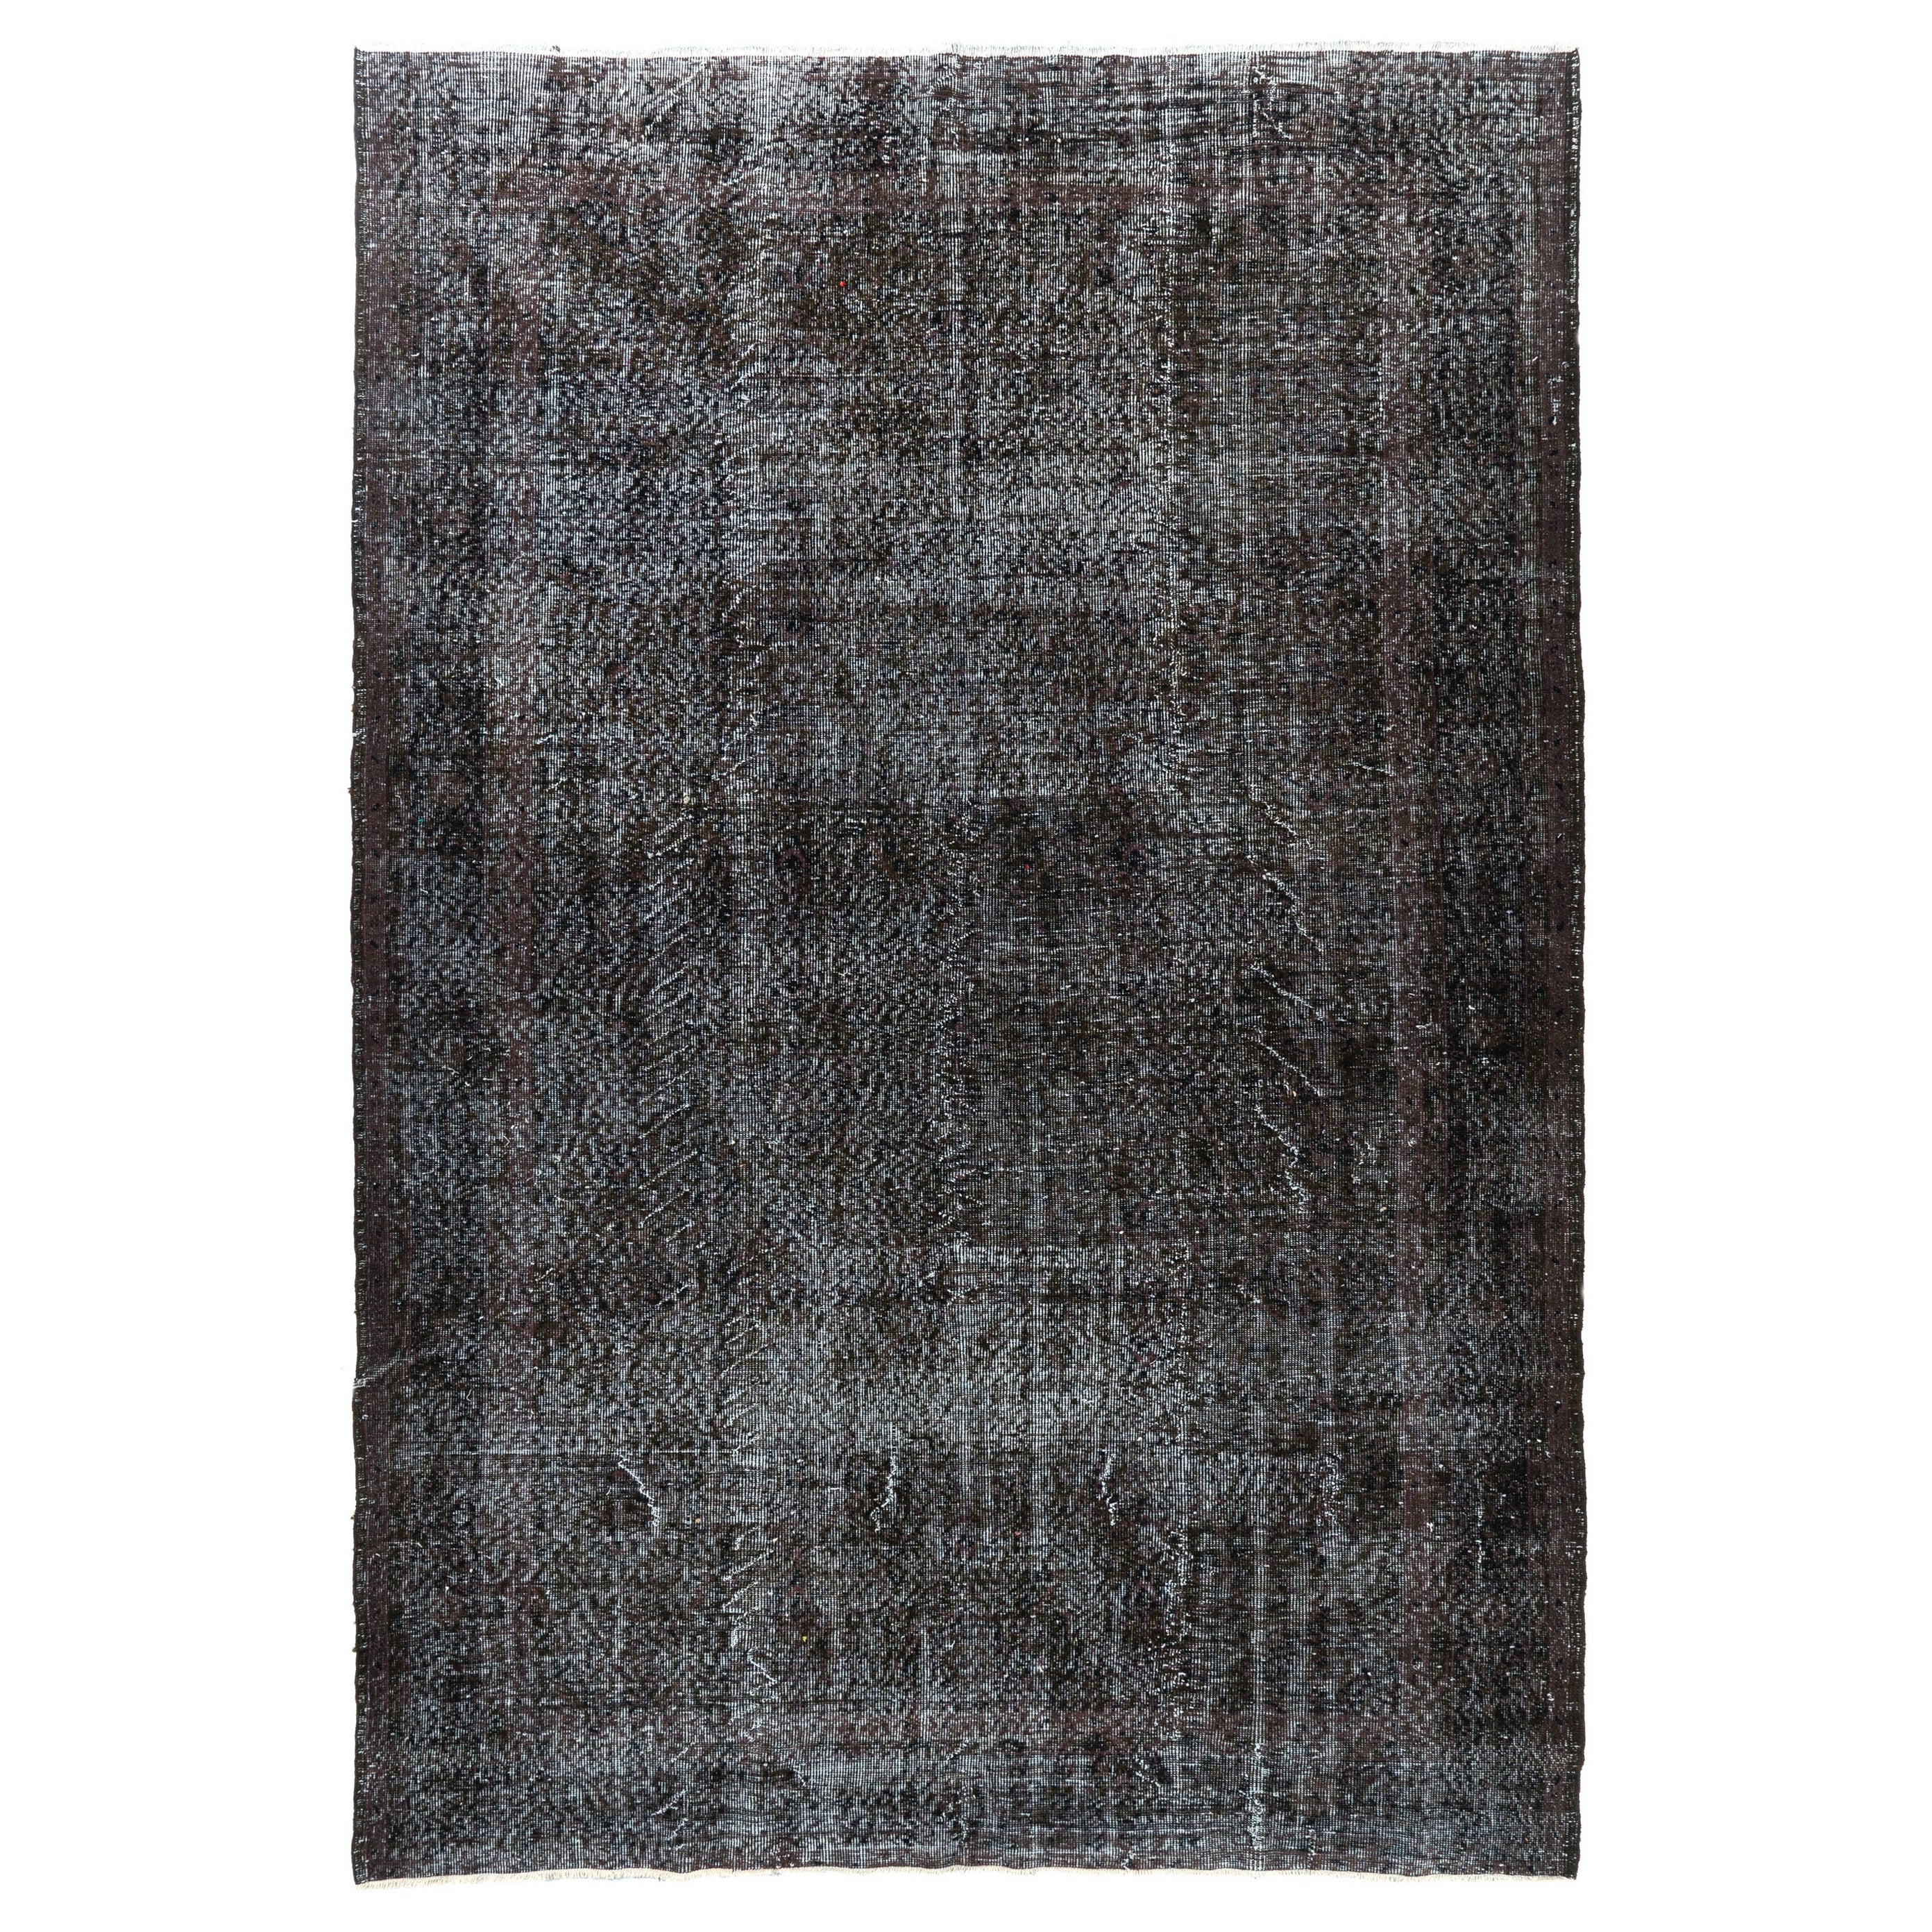 7x10.6 Ft 1950s Türkische Wolle Bereich Teppich in Solid Charcoal Gray. Handgefertigter Teppich